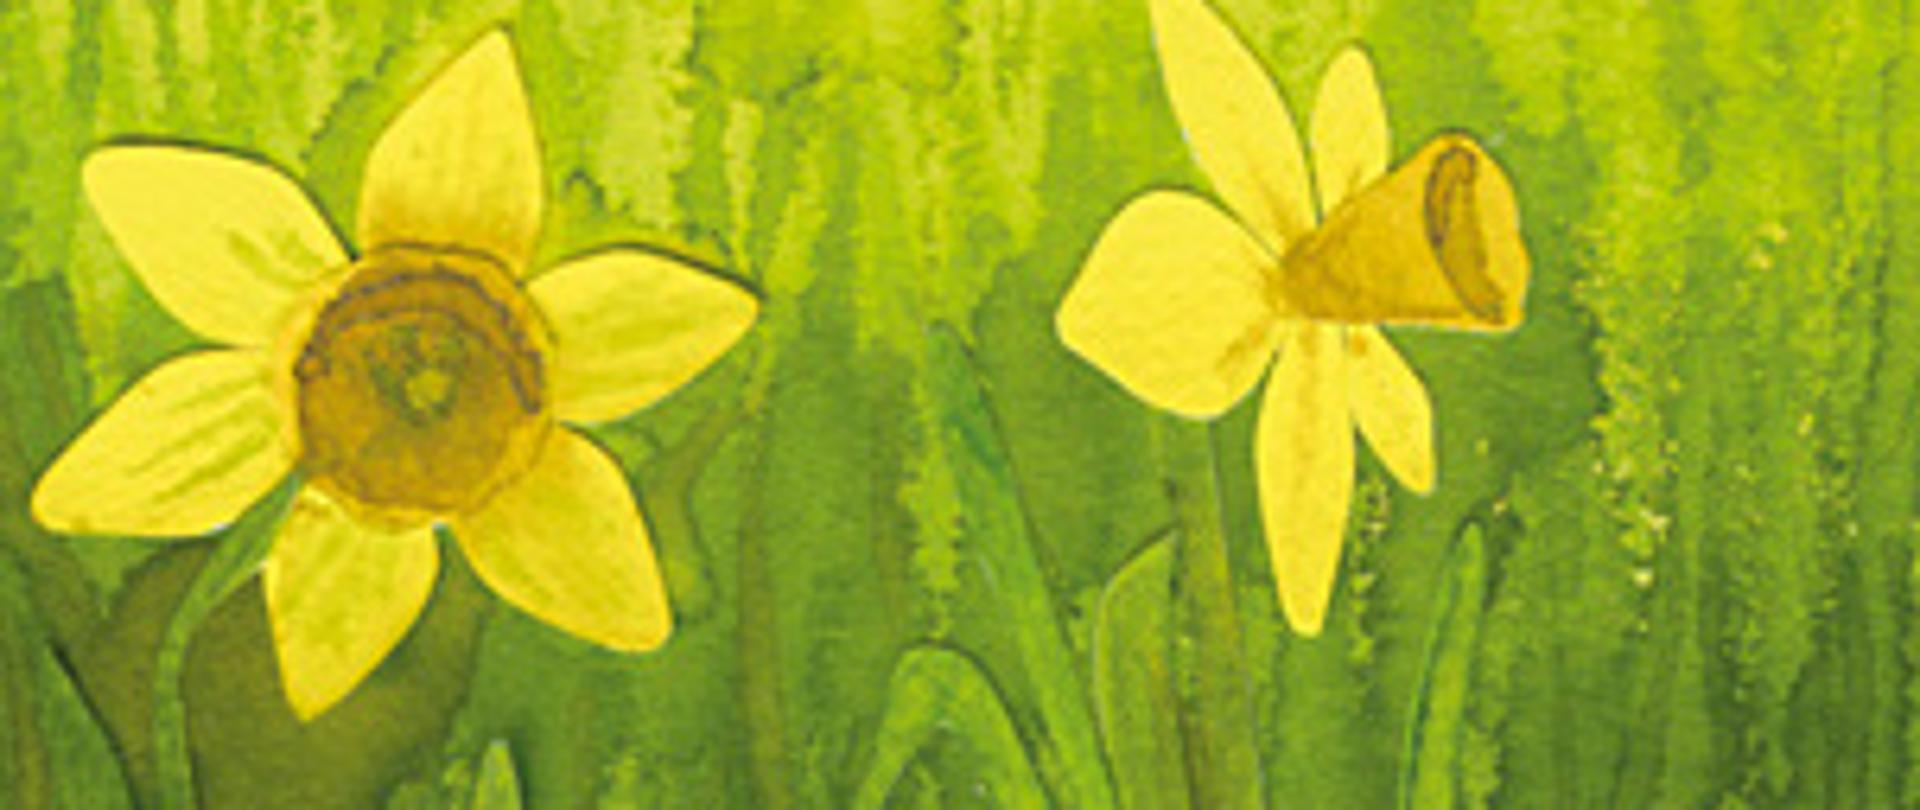 Rysunek przedstawiający żonkile na zielonym tle. W dolnej części żółty napis Pola Nadziei